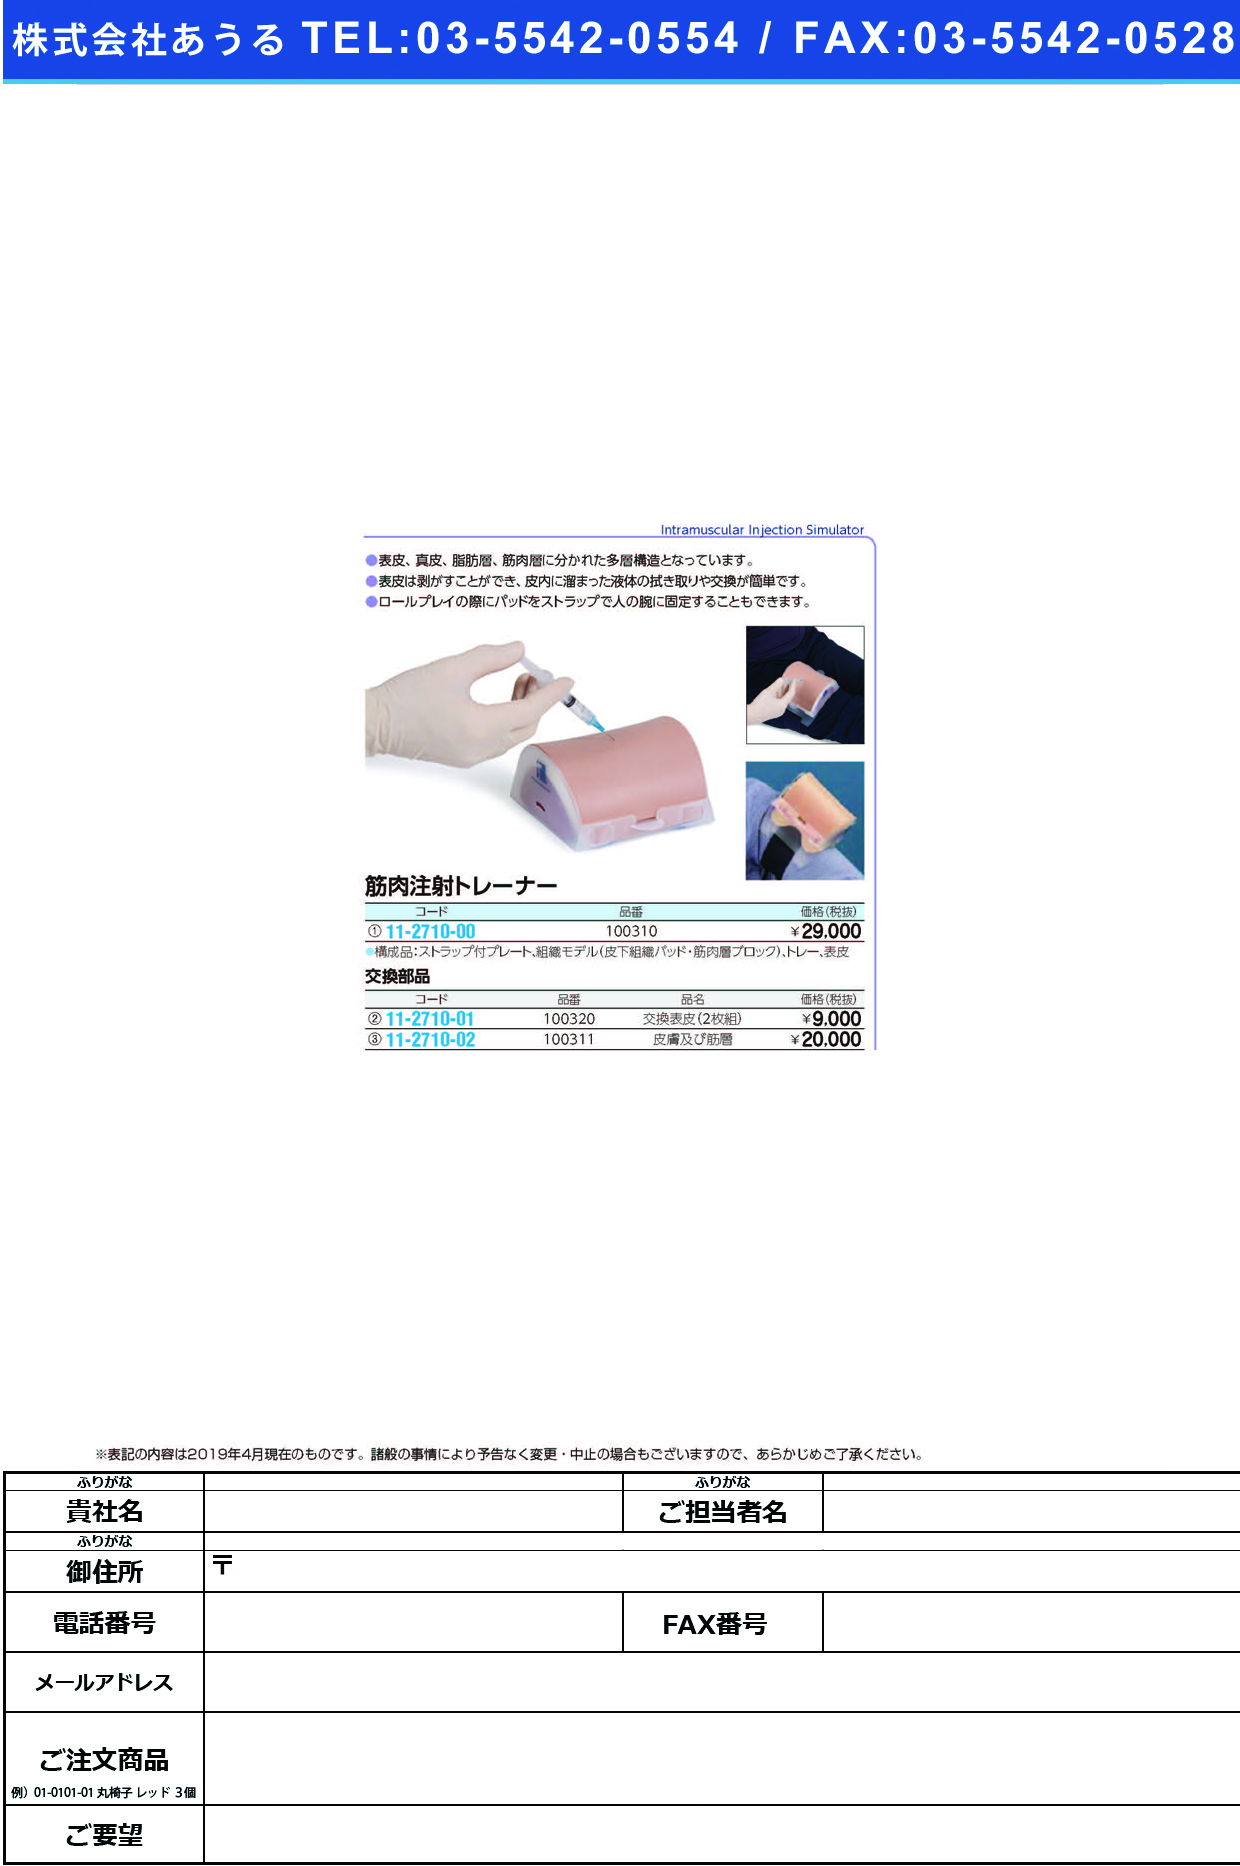 (11-2710-00)筋肉注射トレーナー 10-0310 ｷﾝﾆｸﾁｭｳｼｬﾄﾚｰﾅｰ【1組単位】【2019年カタログ商品】